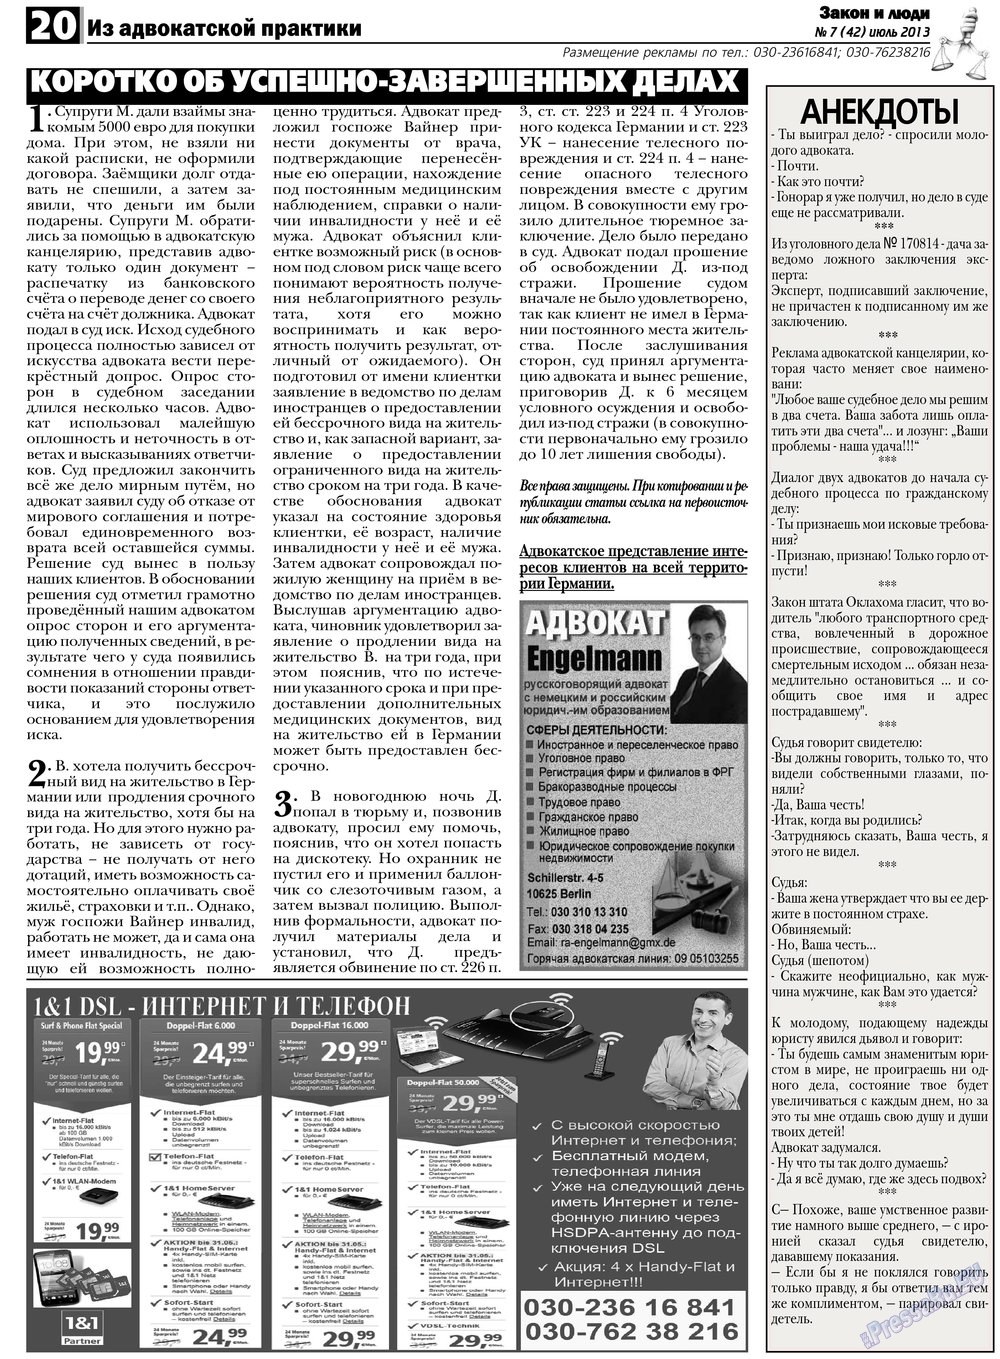 Закон и люди, газета. 2013 №7 стр.20